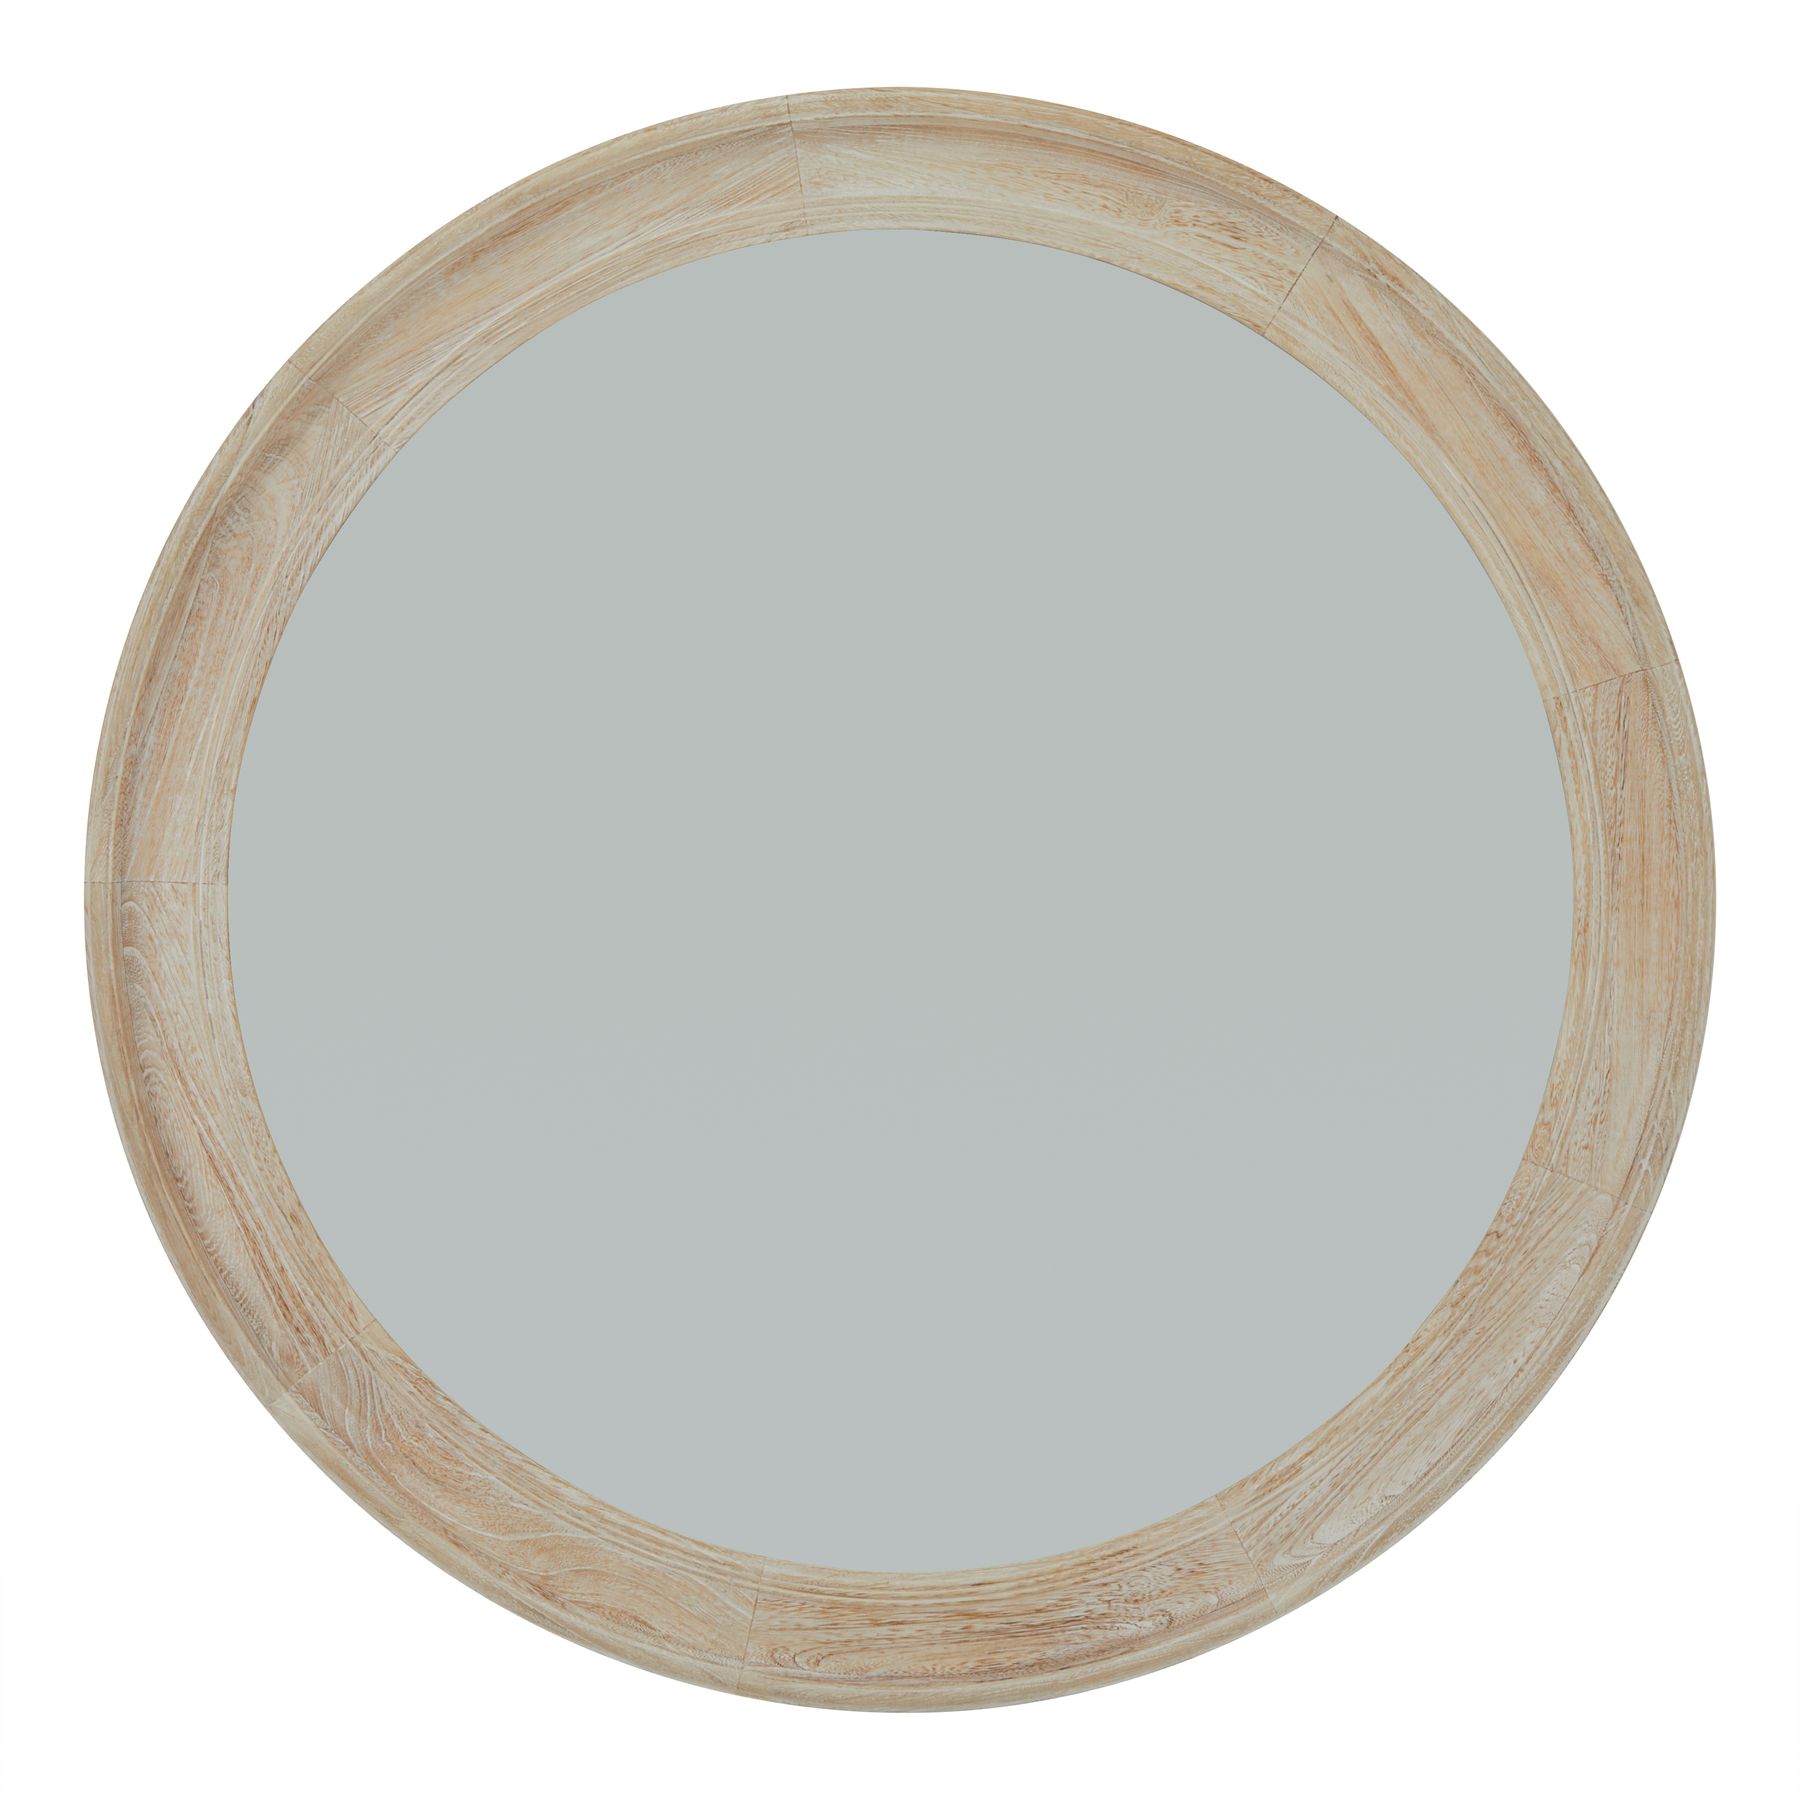 Washed Wood Round Framed Large Mirror - Image 1